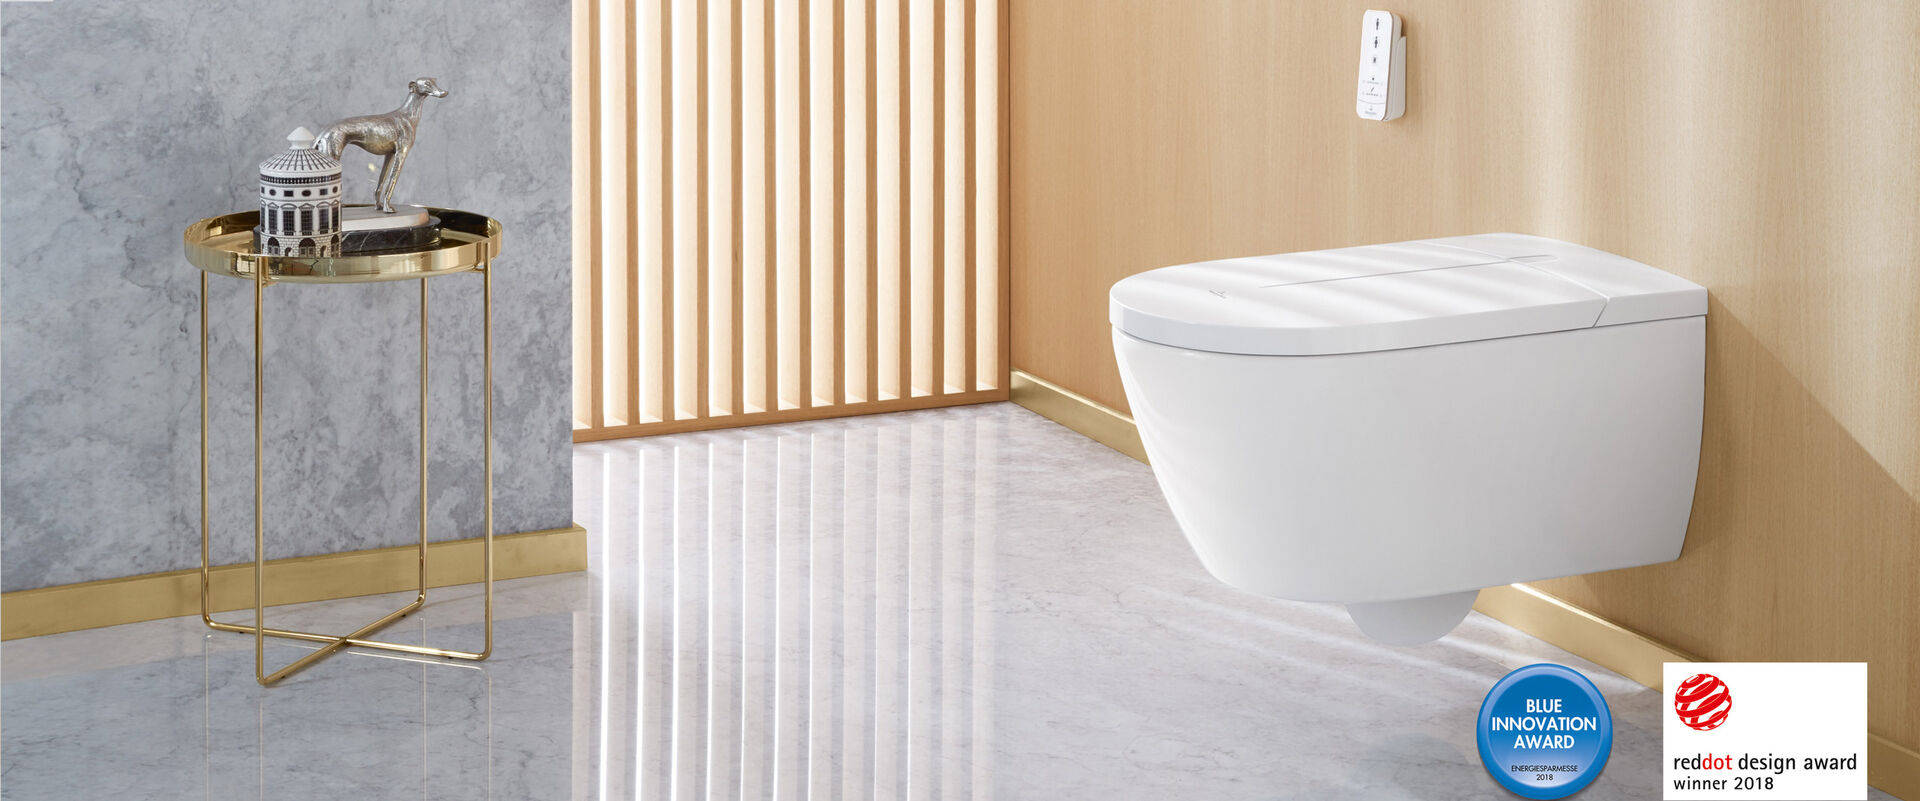 Dusch-WC Szene mit goldfarbenem Beistelltisch, Lamellenfenster und dem innovativen Dusch-WC ViClean-I 100 von Villeroy & Boch. Logos im Bild verweisen auf Design-Awards.